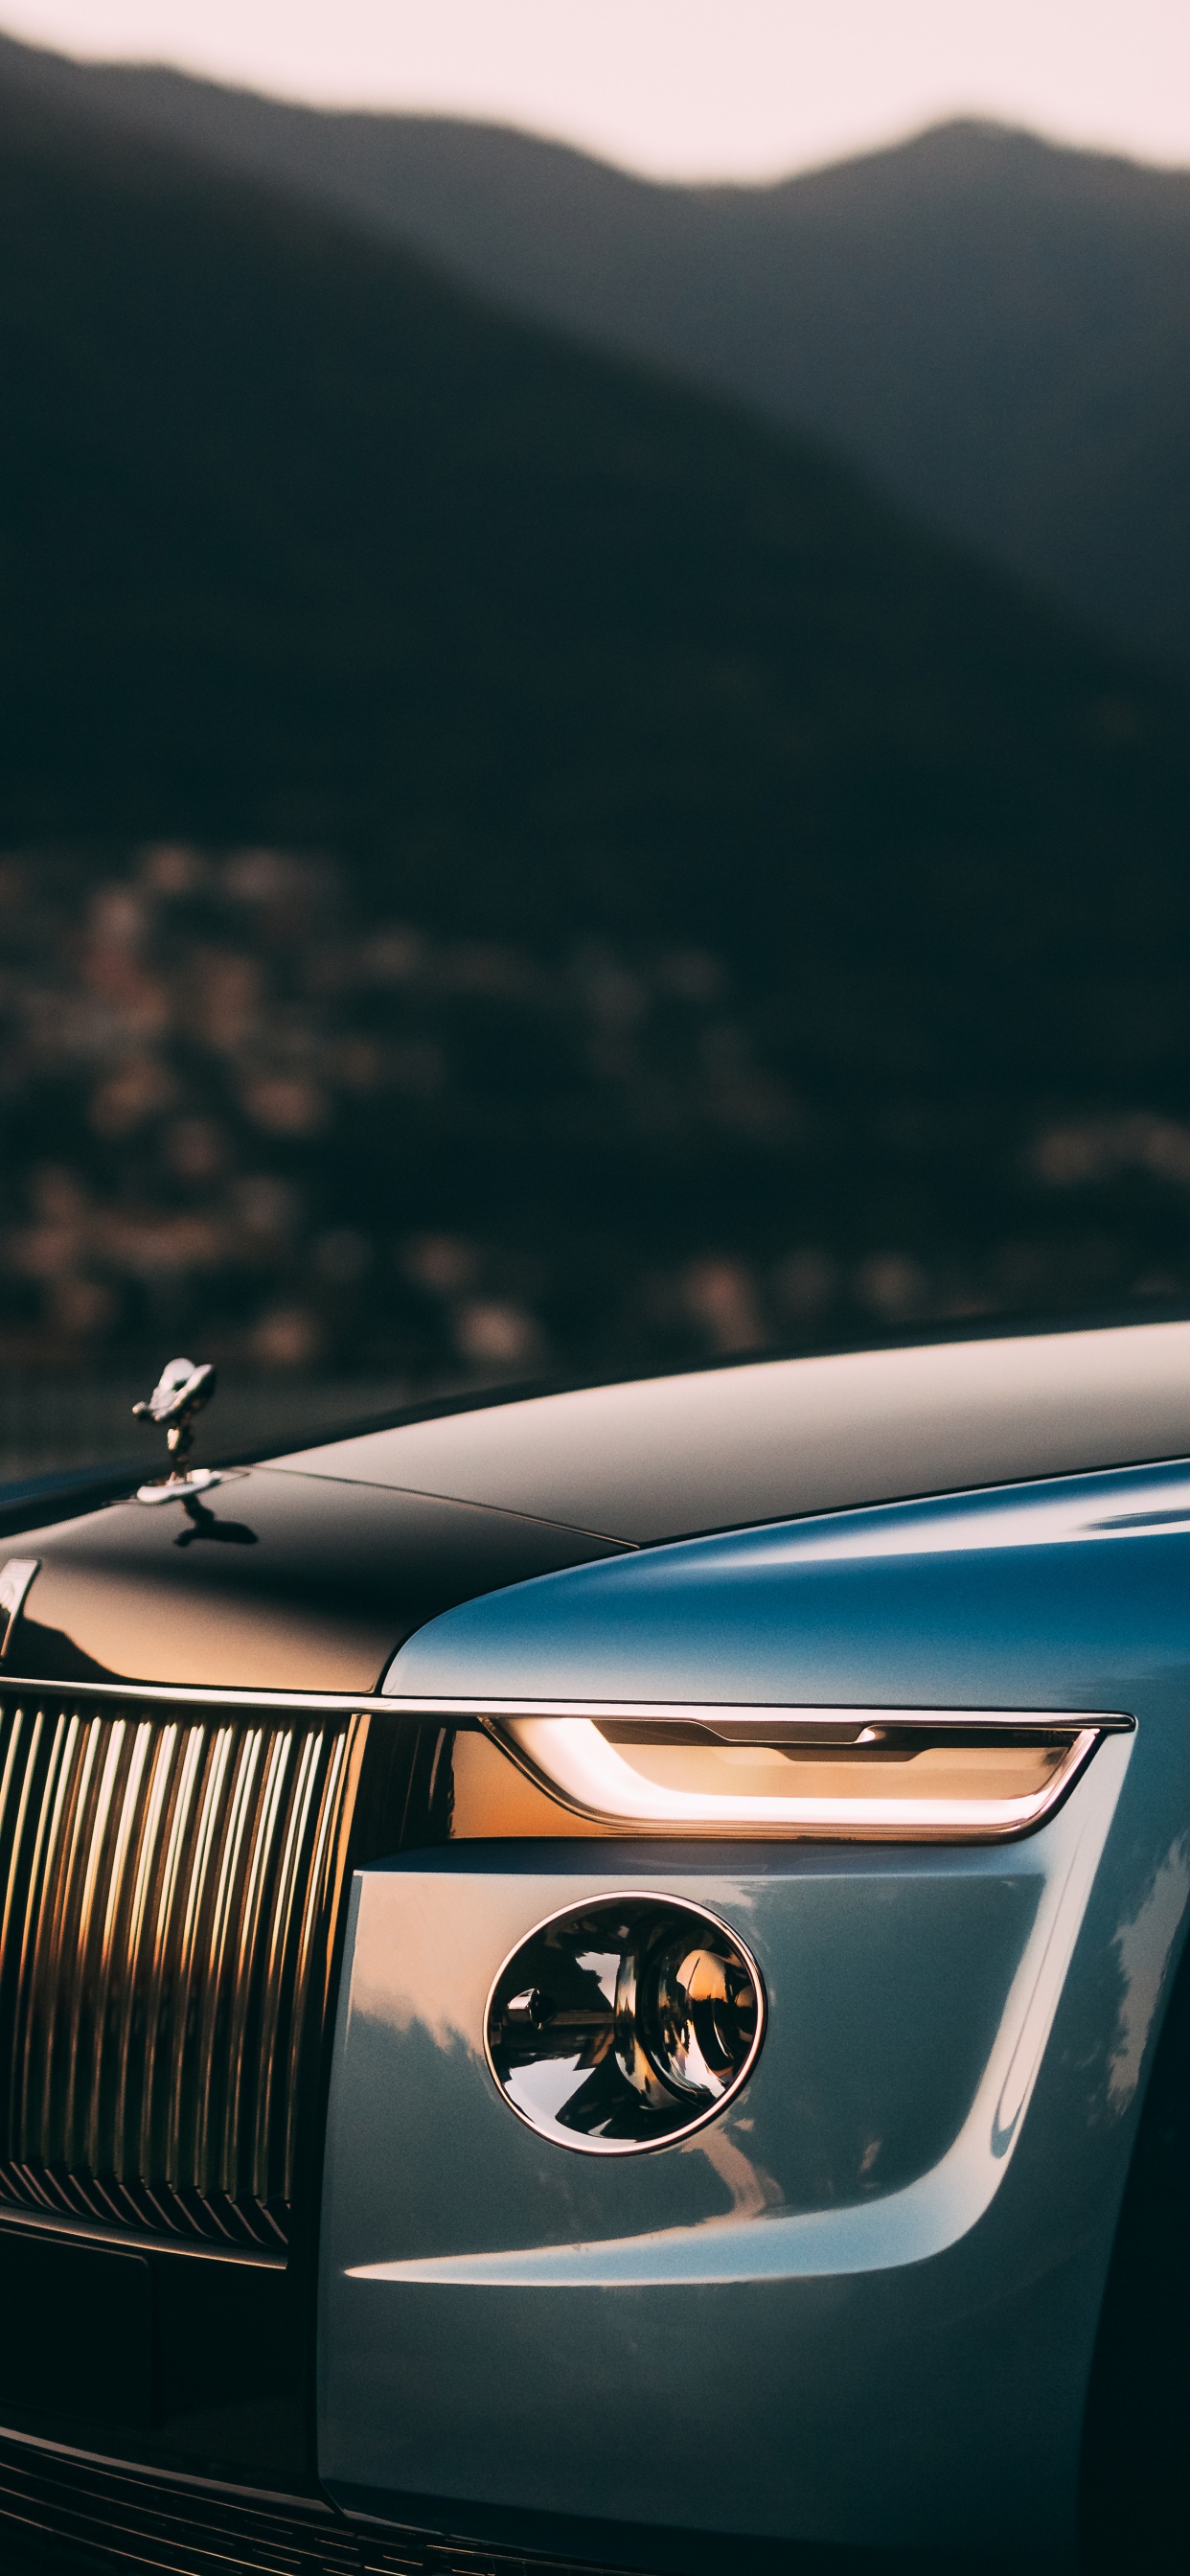 Điều gì khiến chiếc xe sang Rolls-Royce trở nên đặc biệt? Hãy xem hình ảnh để khám phá những đặc điểm độc đáo và thiết kế hoàn hảo của chiếc xe này. 